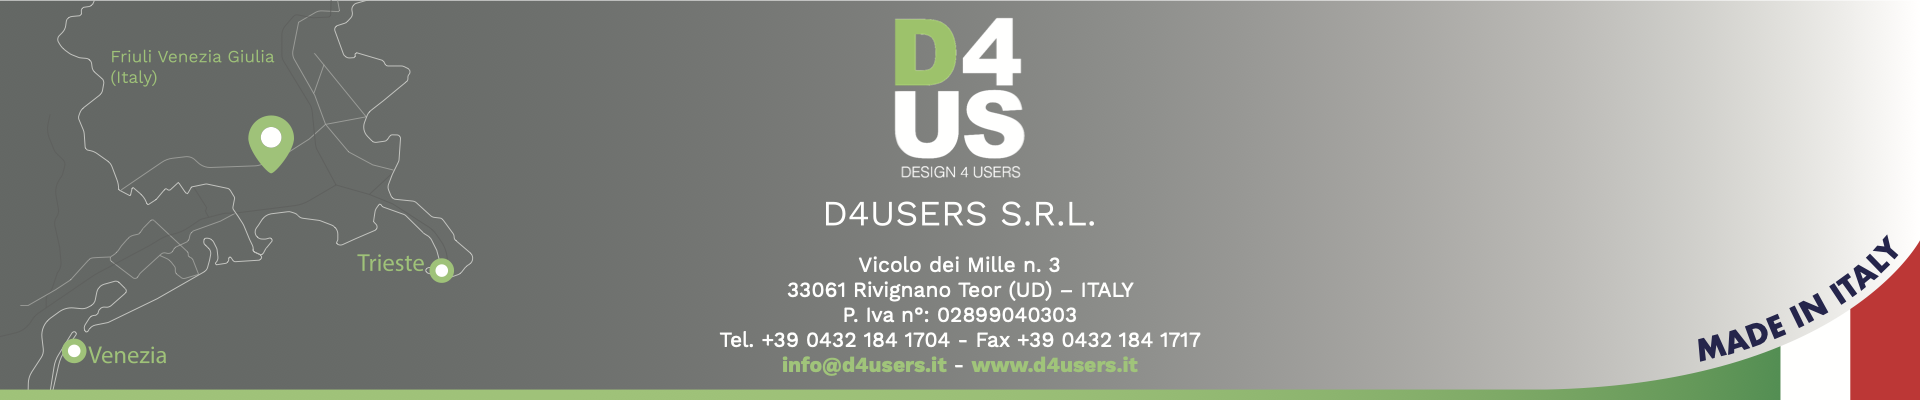 D4USERS   S.R.L. Vicolo dei Mille n. 3 33061 Rivignano Teor (UD) – ITALY P. Iva n°: 02899040303 Tel. +39 0432 184 1704 - Fax +39 0432 184 1717 info@d4users.it - www.d4users.it 